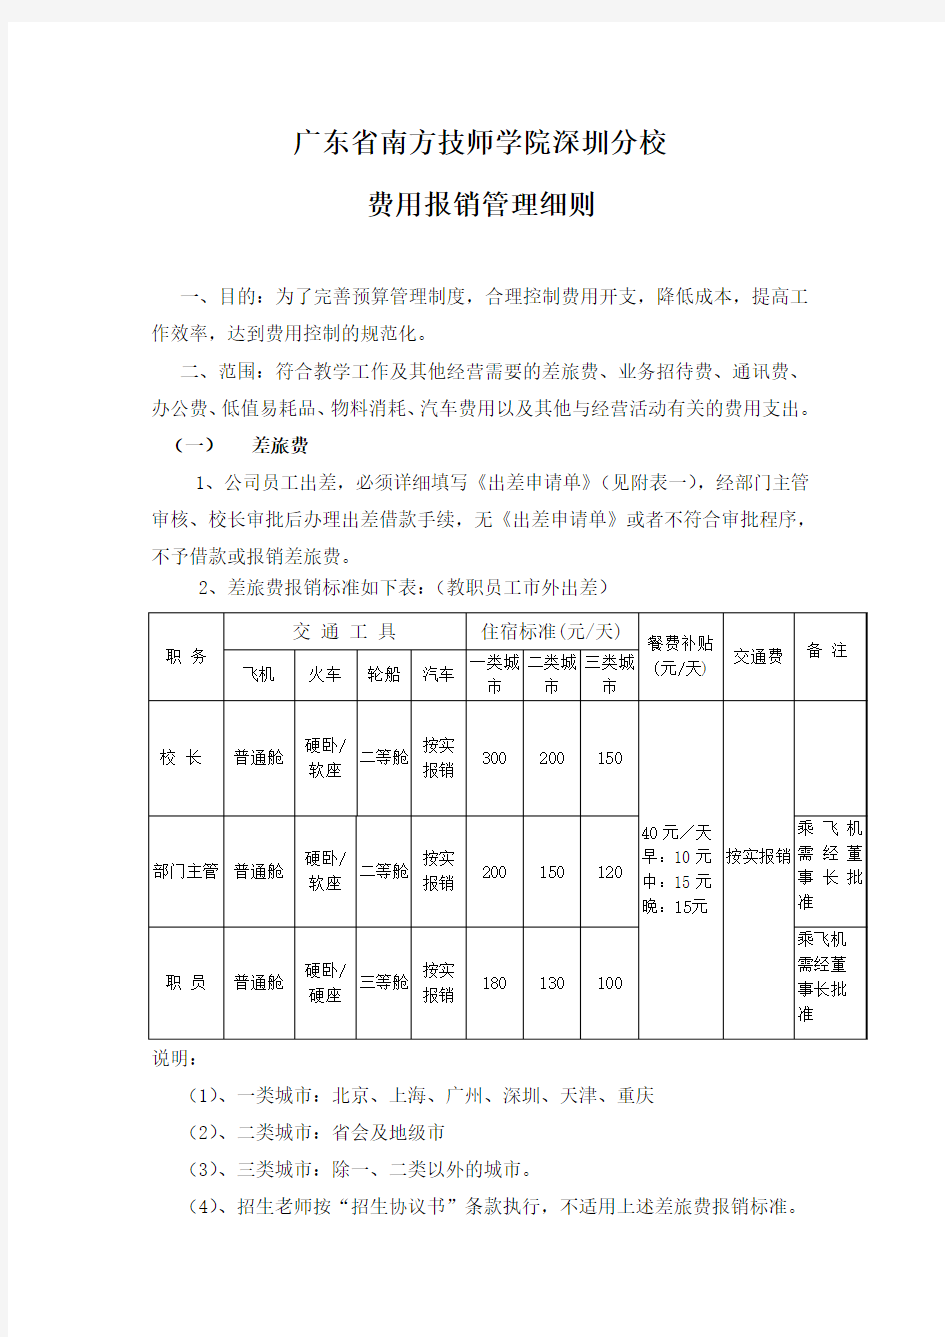 南方技师学院深圳分校报销费用管理细则(定稿)